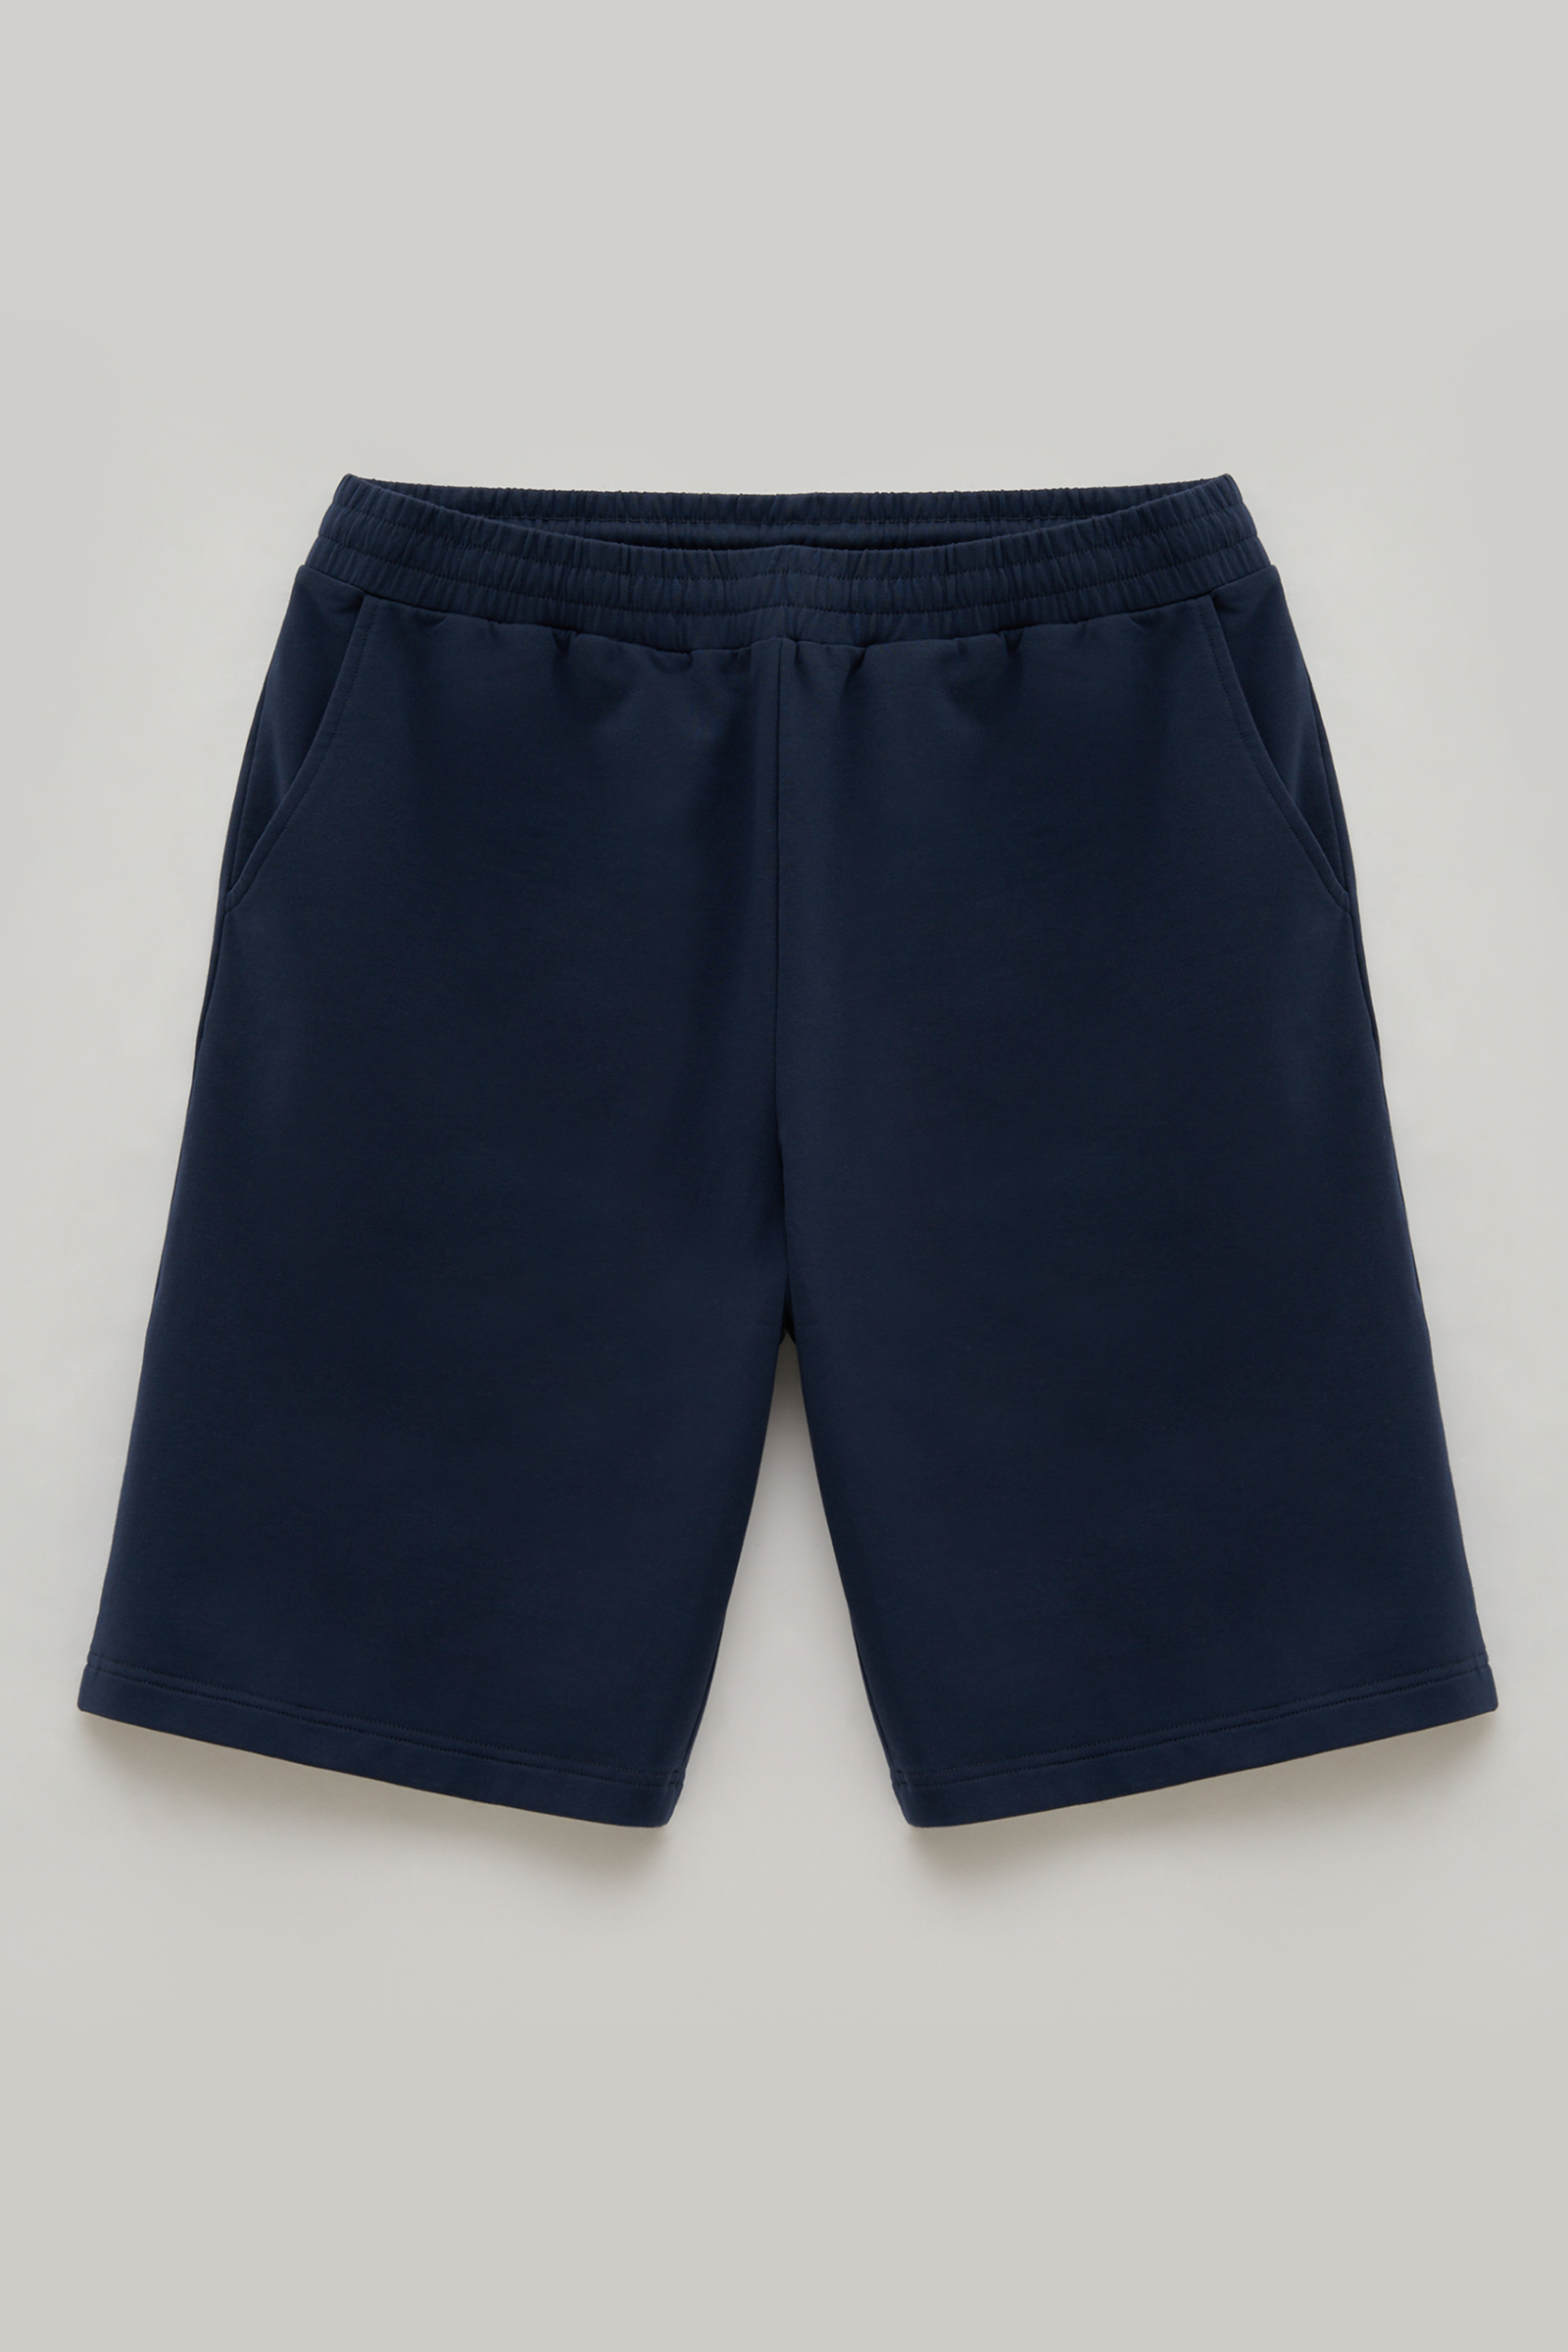 Повседневные шорты мужские Finn Flare FSE21033 синие 2XL